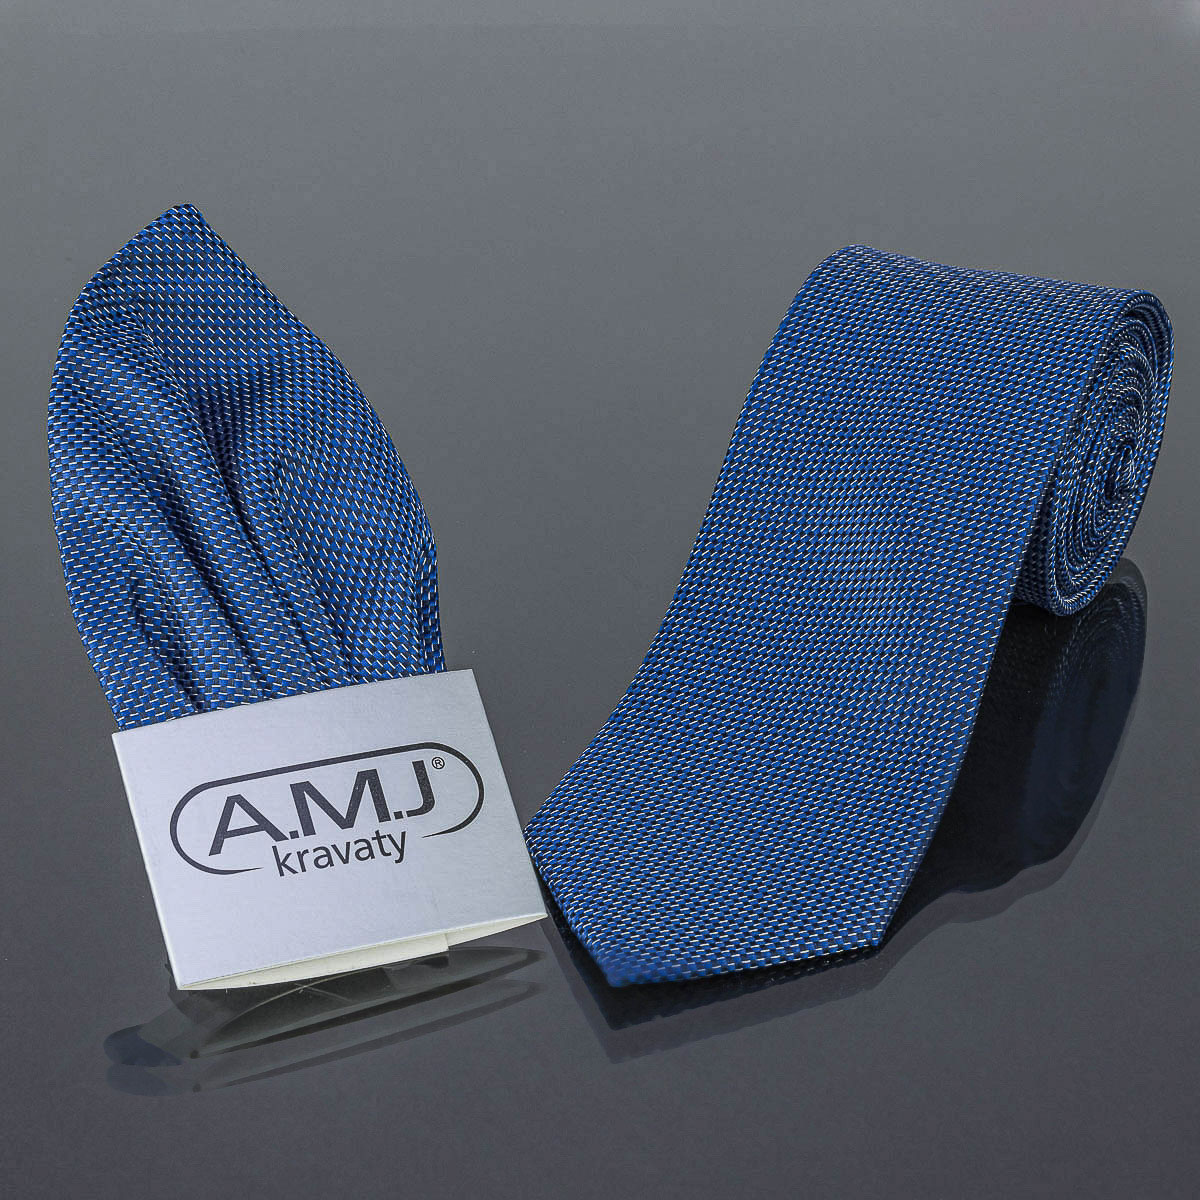 Kravata pánská s kapesníčkem AMJ, čárky, KK0470, modrá